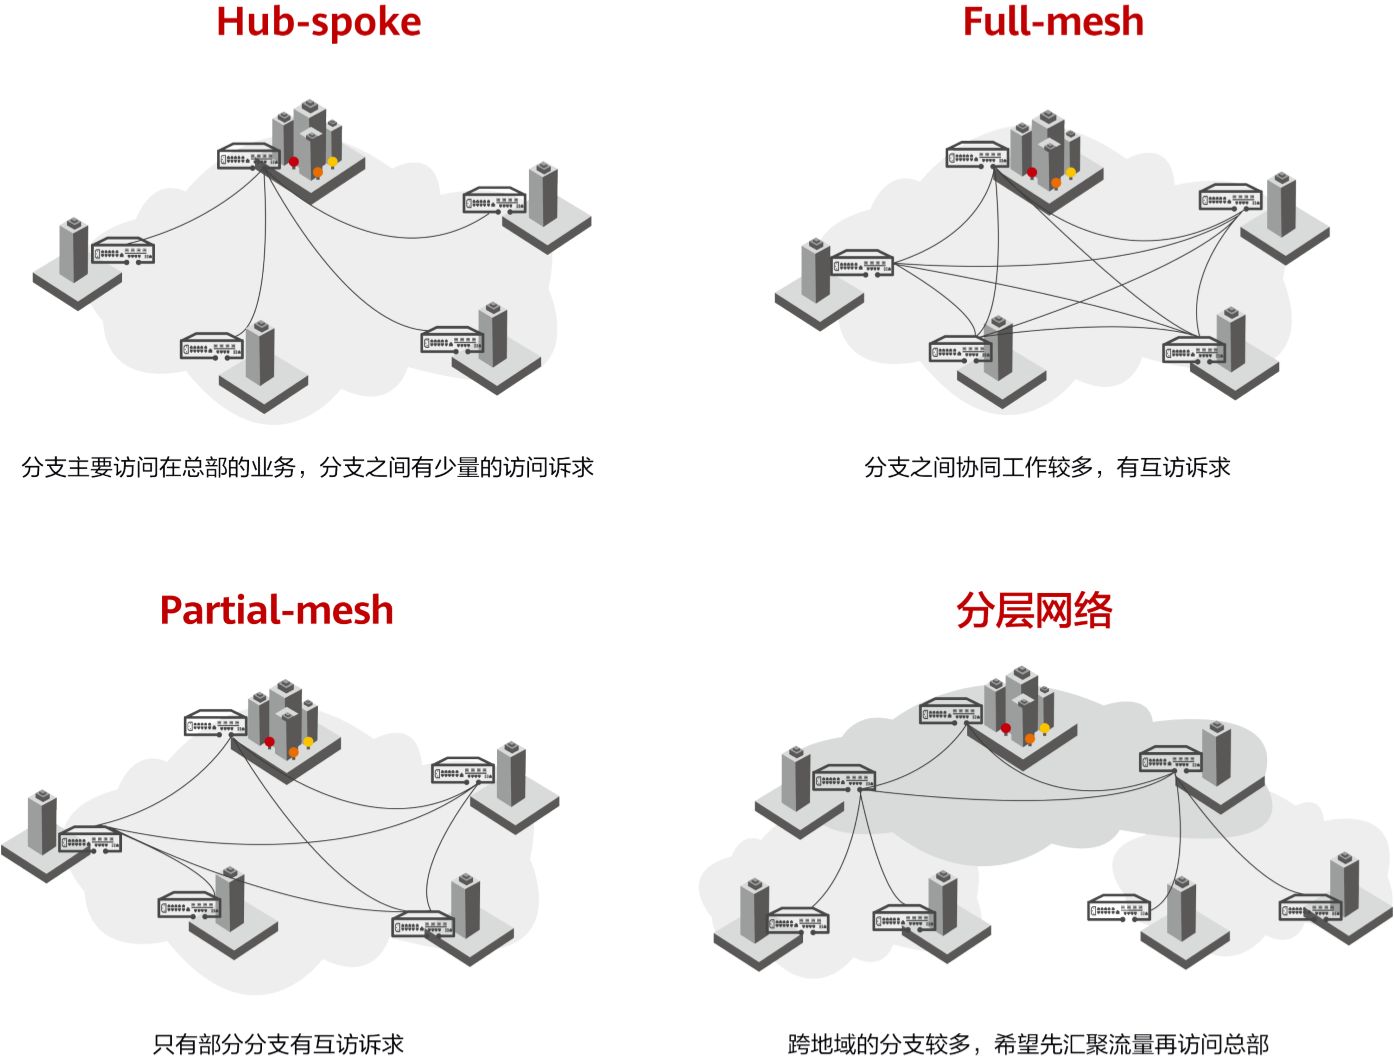 华为SD-WAN的架构与关键技术